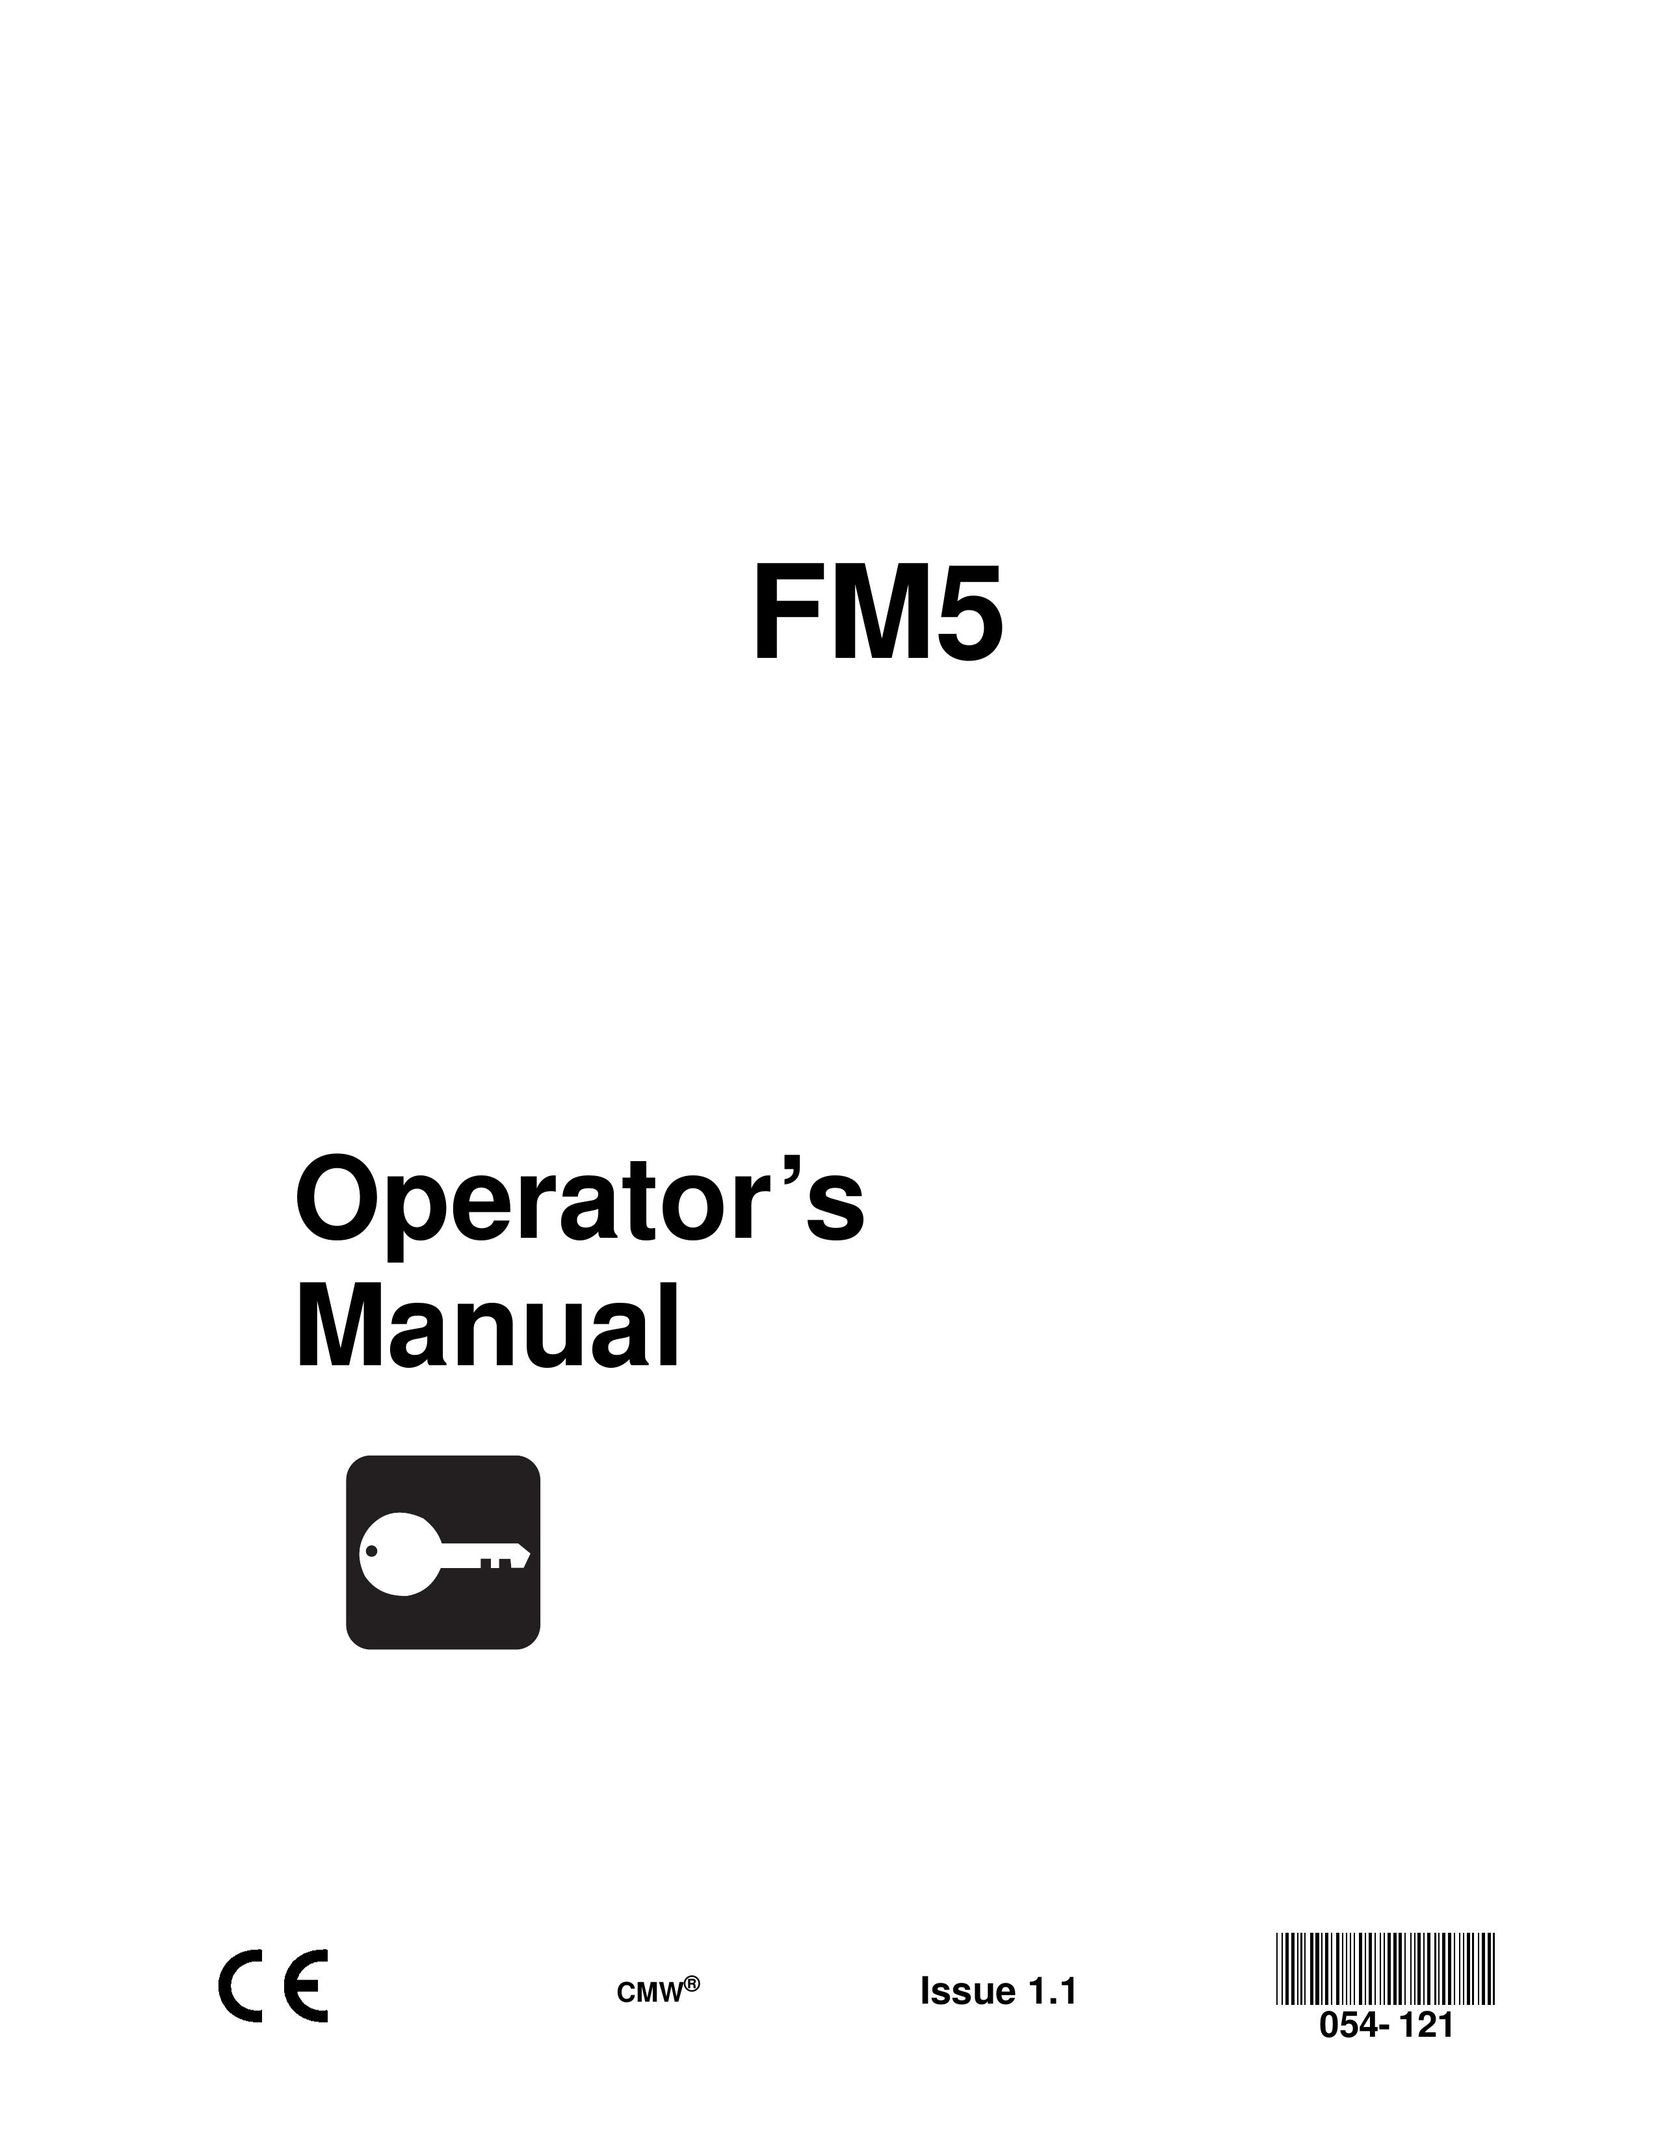 HP (Hewlett-Packard) FM5 Air Cleaner User Manual